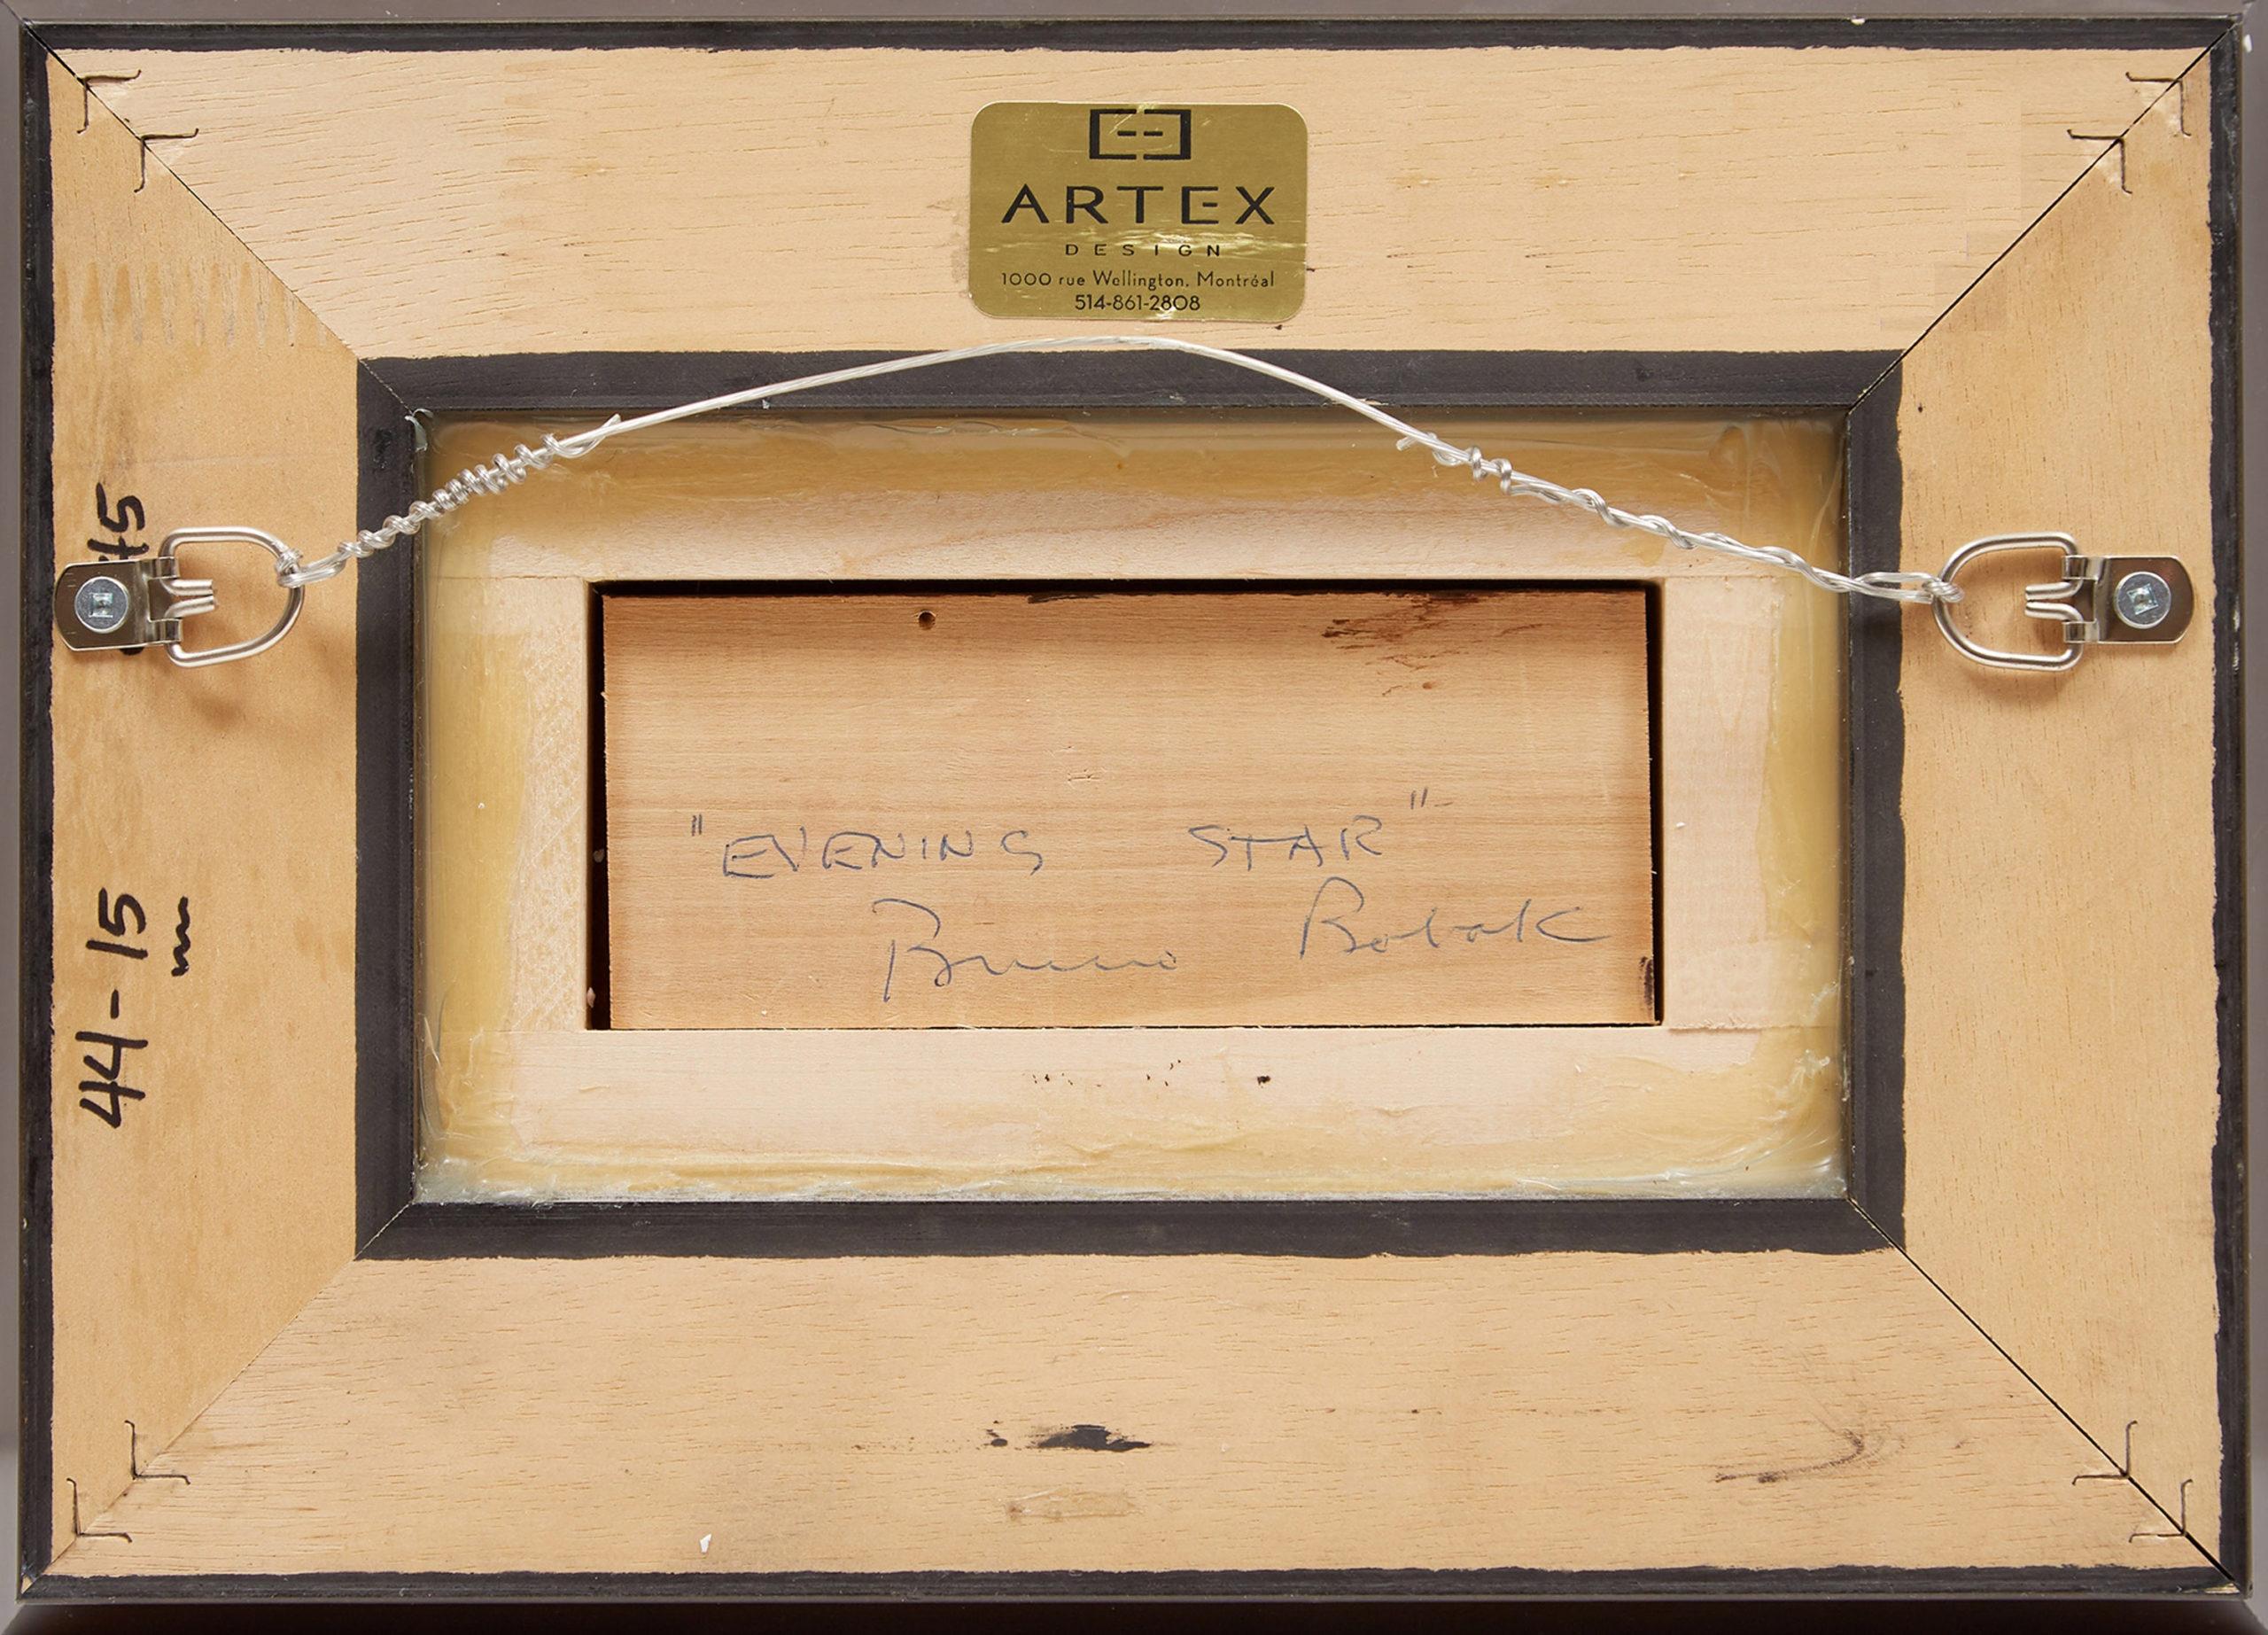 Bruno Bobak, Canadien, 1928-2004
Étoile du soir
Huile sur toile, montée sur carton
5 x 8 pouces
12,7 x 20,3 cm
signée en bas à gauche ; signée et titrée sur un encart dans l'encadrement au verso
encadré

Né à Wawelowska, en Pologne, en 1923, Bruno